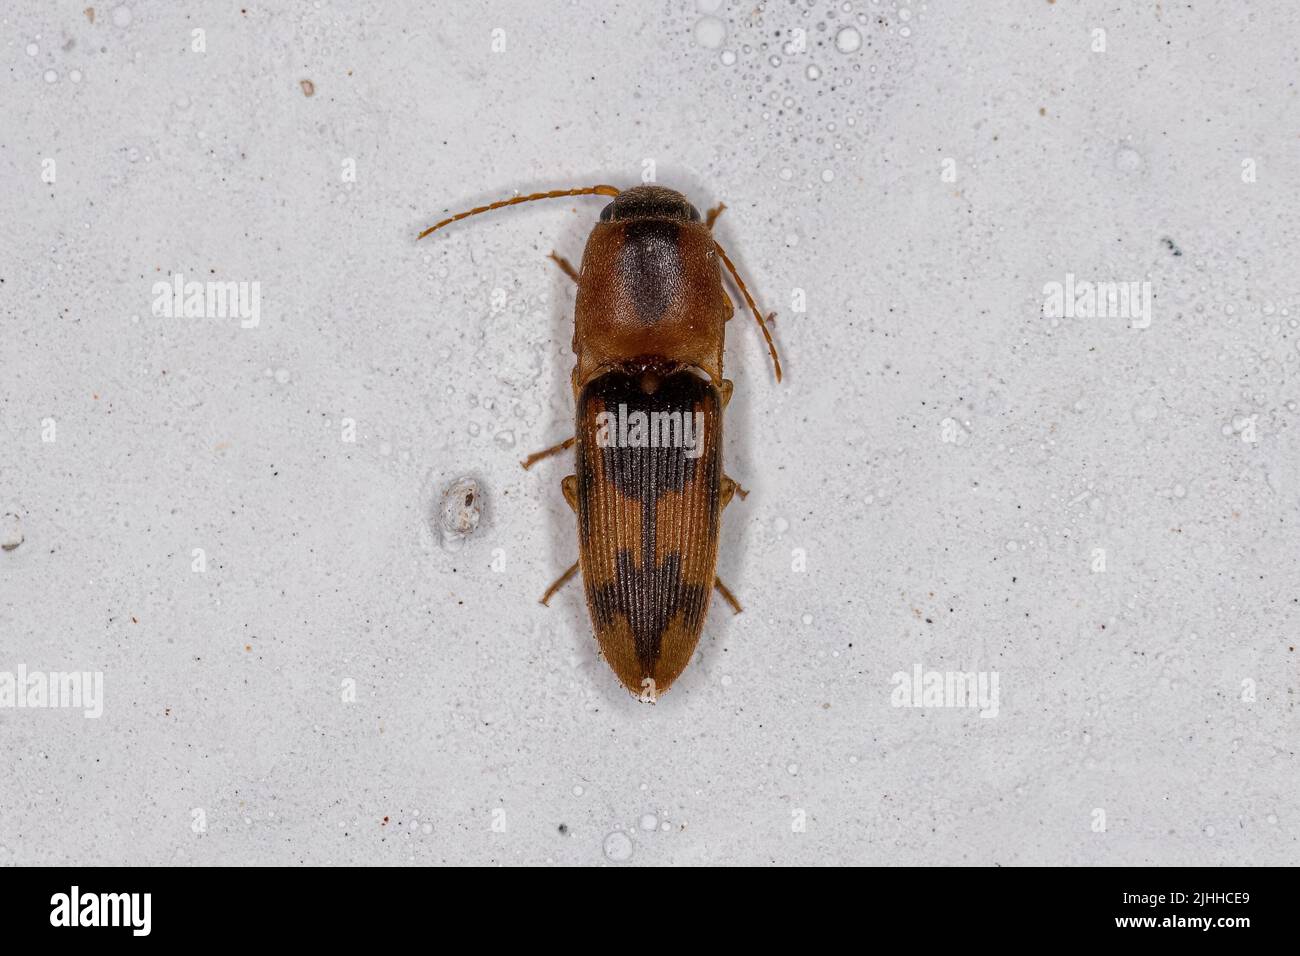 Adulto Click Beetle de la familia Elateridae Foto de stock